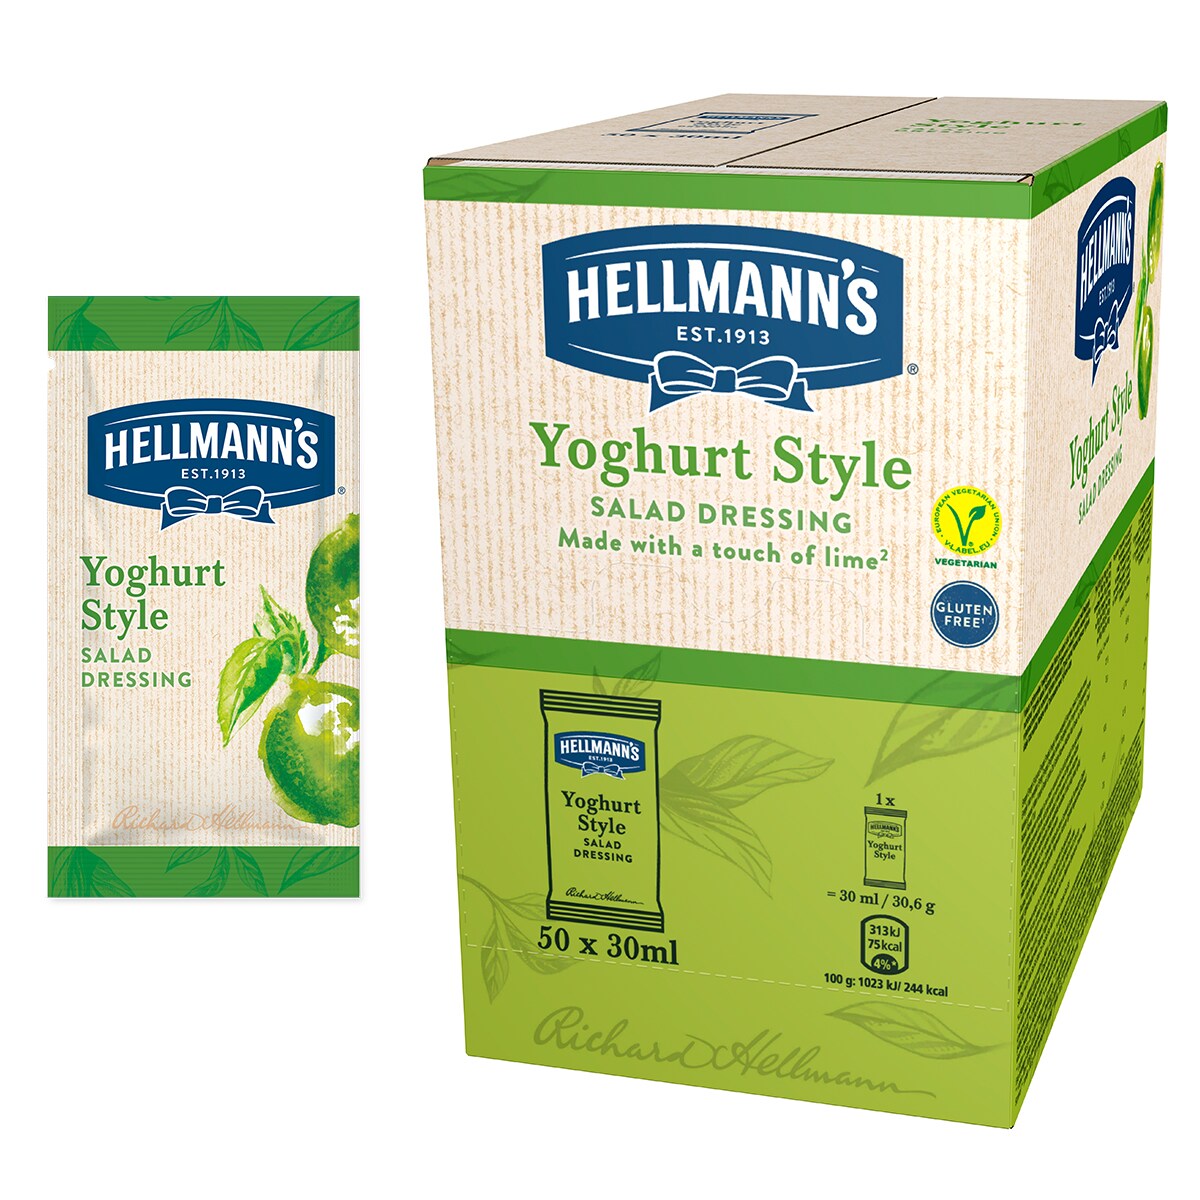 Hellmann's Салатен дресинг Йогурт - доза 30 ml - "Имам нужда от готово решение за салатен дресинг в единична доза, с качество, на което мога да разчитам и което бързо би се добавило към салата за доставка"